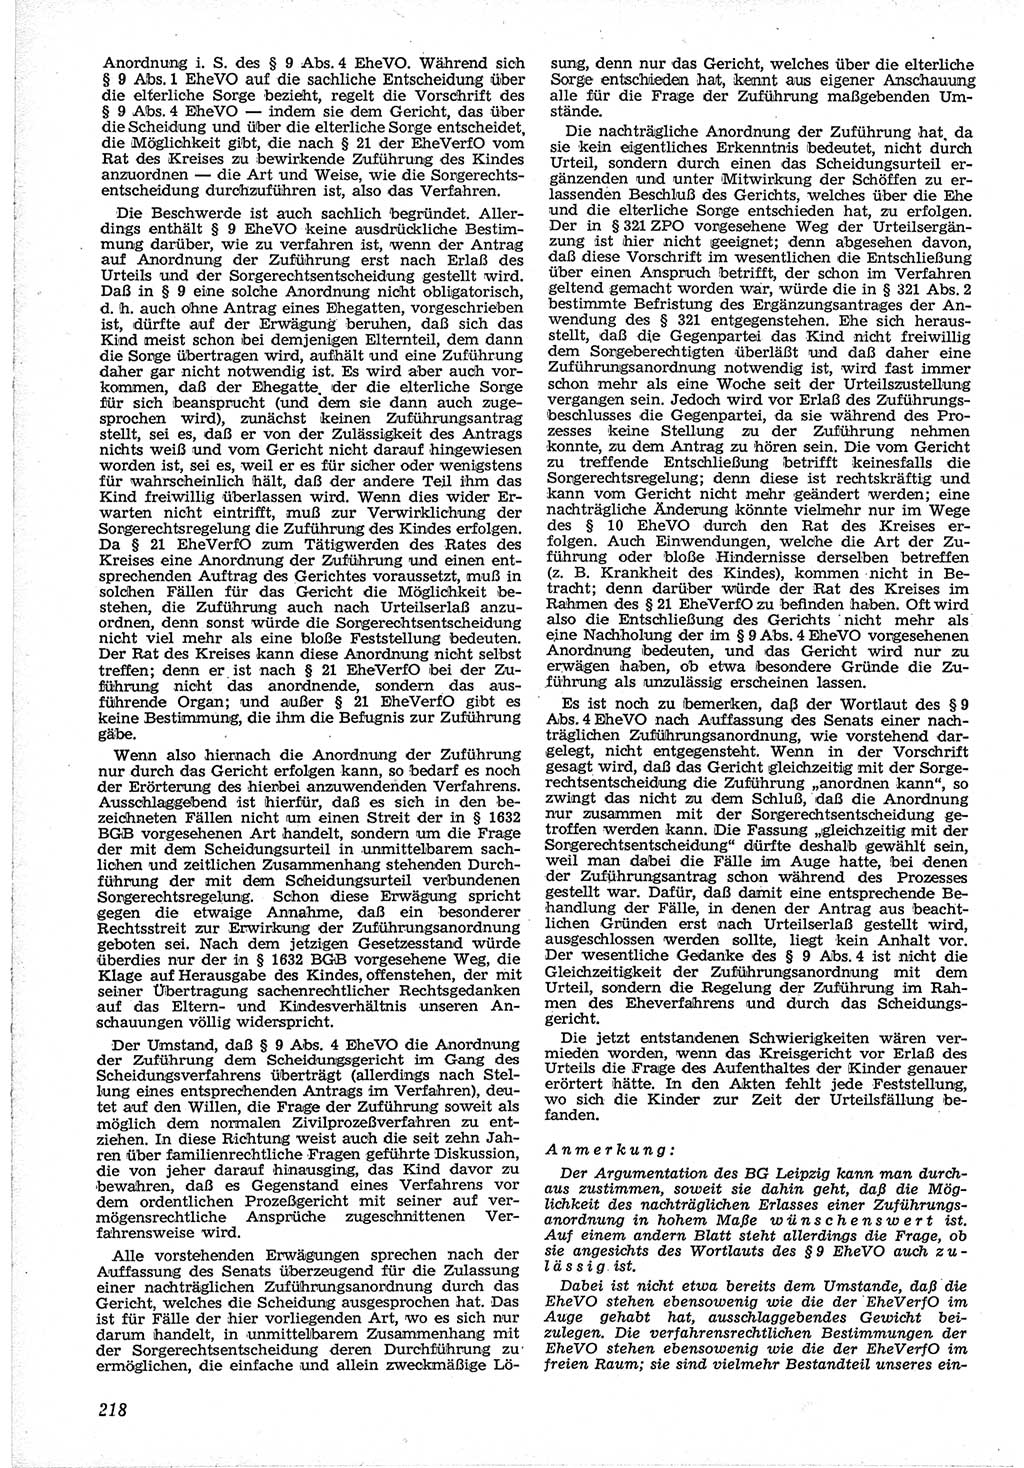 Neue Justiz (NJ), Zeitschrift für Recht und Rechtswissenschaft [Deutsche Demokratische Republik (DDR)], 12. Jahrgang 1958, Seite 218 (NJ DDR 1958, S. 218)